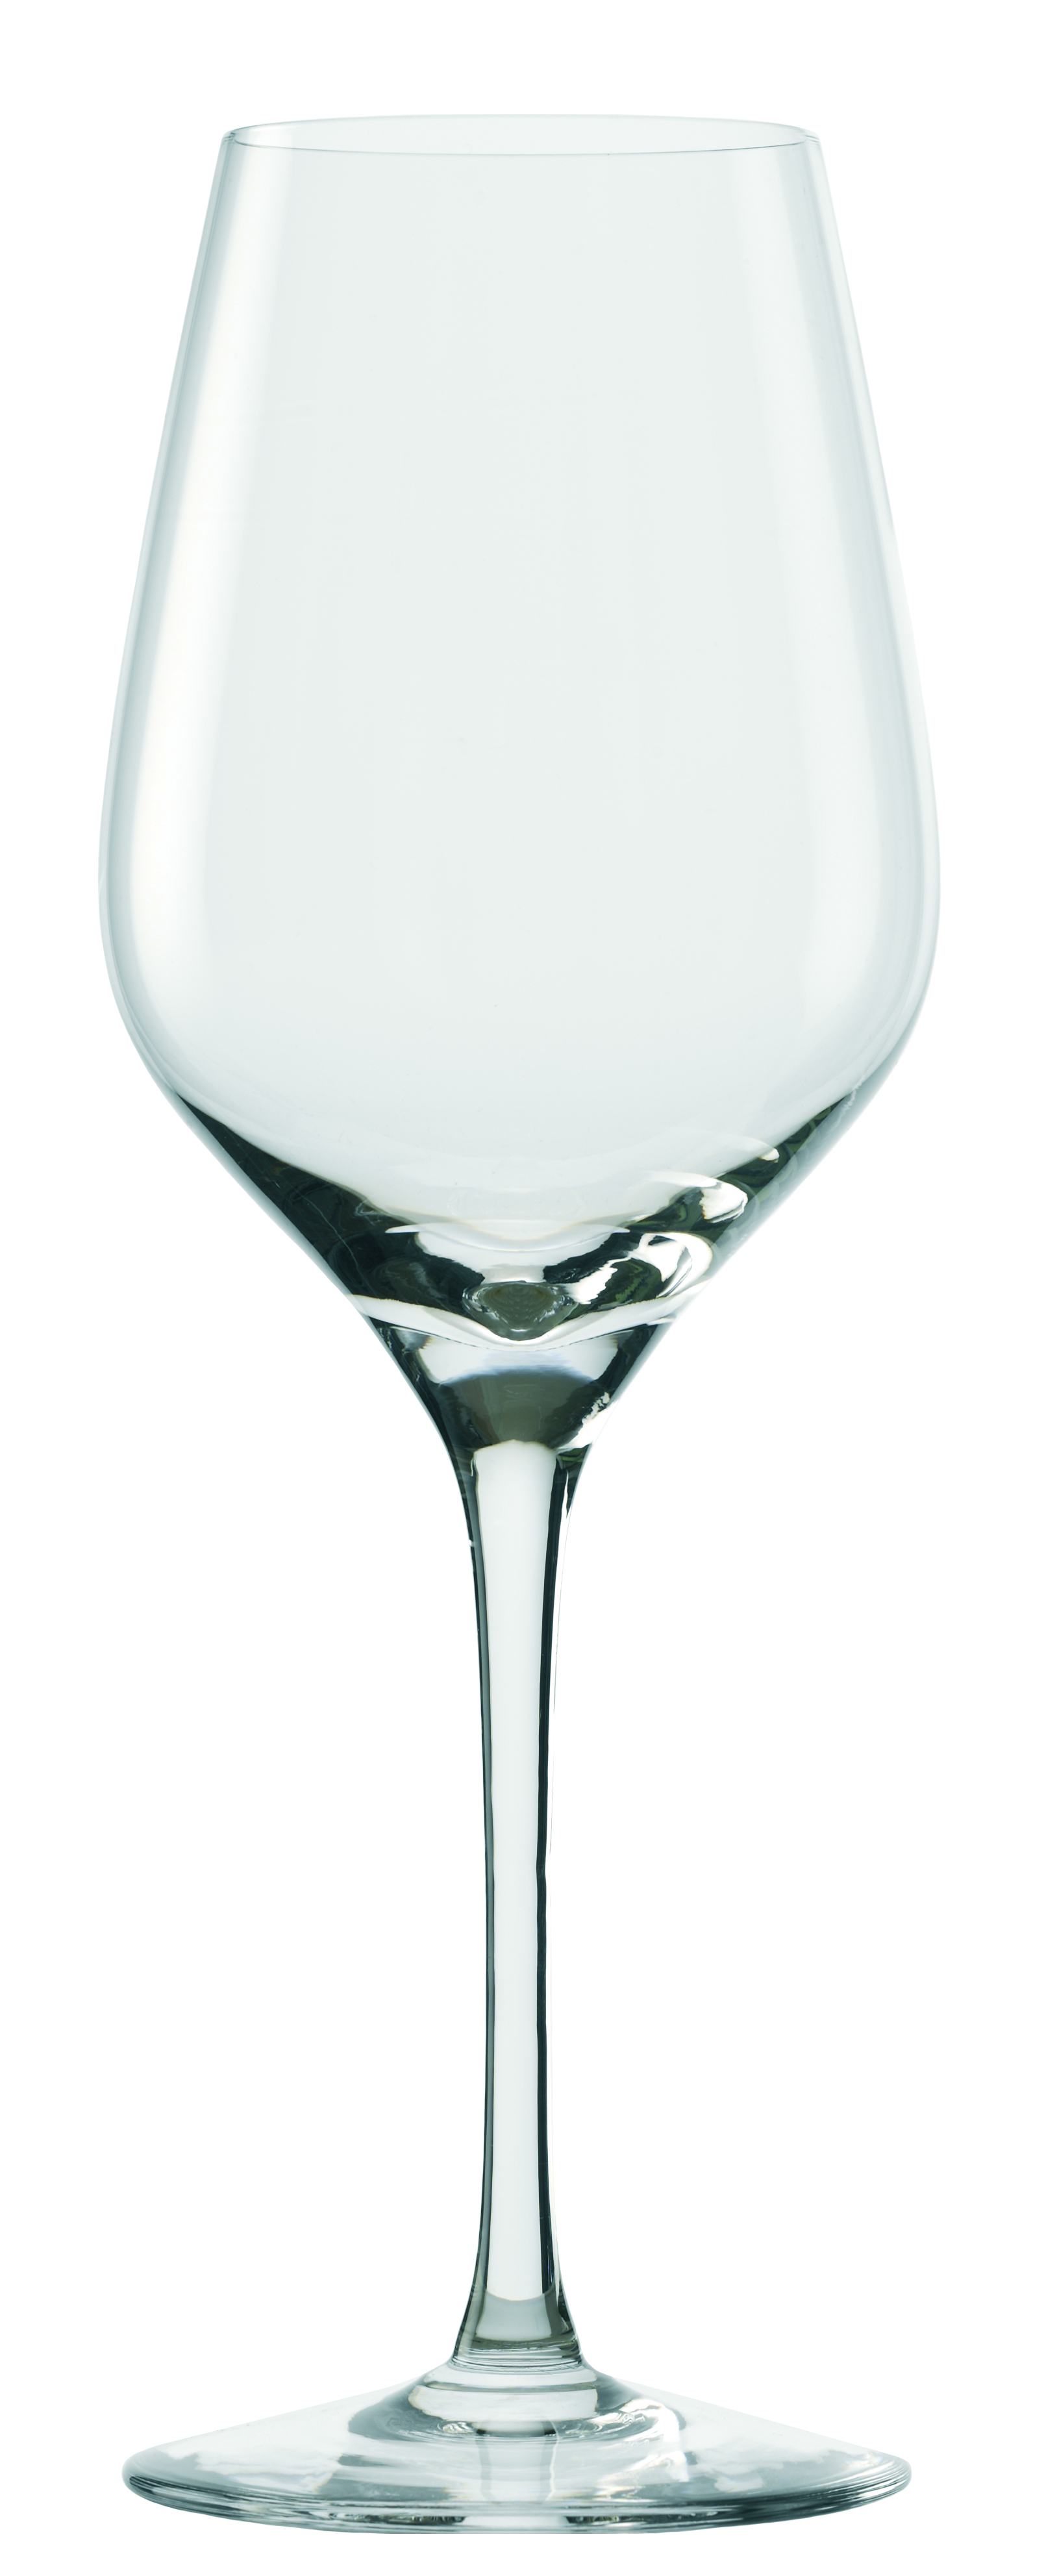 Weißweinglas Exquisit Royal, Stölzle Lausitz - 420ml (6 Stk.)